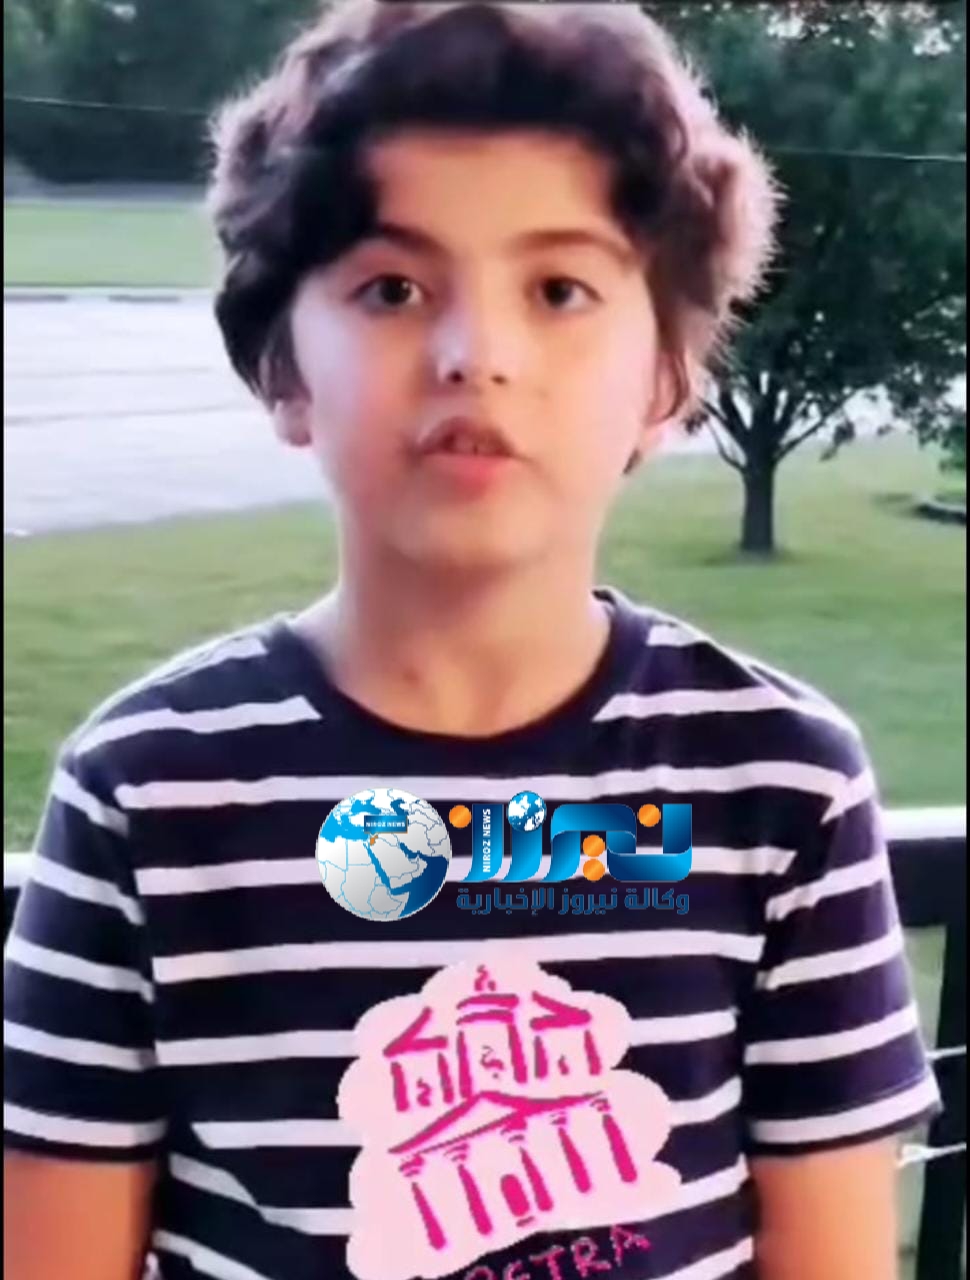 الطفل عامر سليمان الحوري يروج لمدينة  البتراء السياحية الاردنية  في أمريكا..فيديو